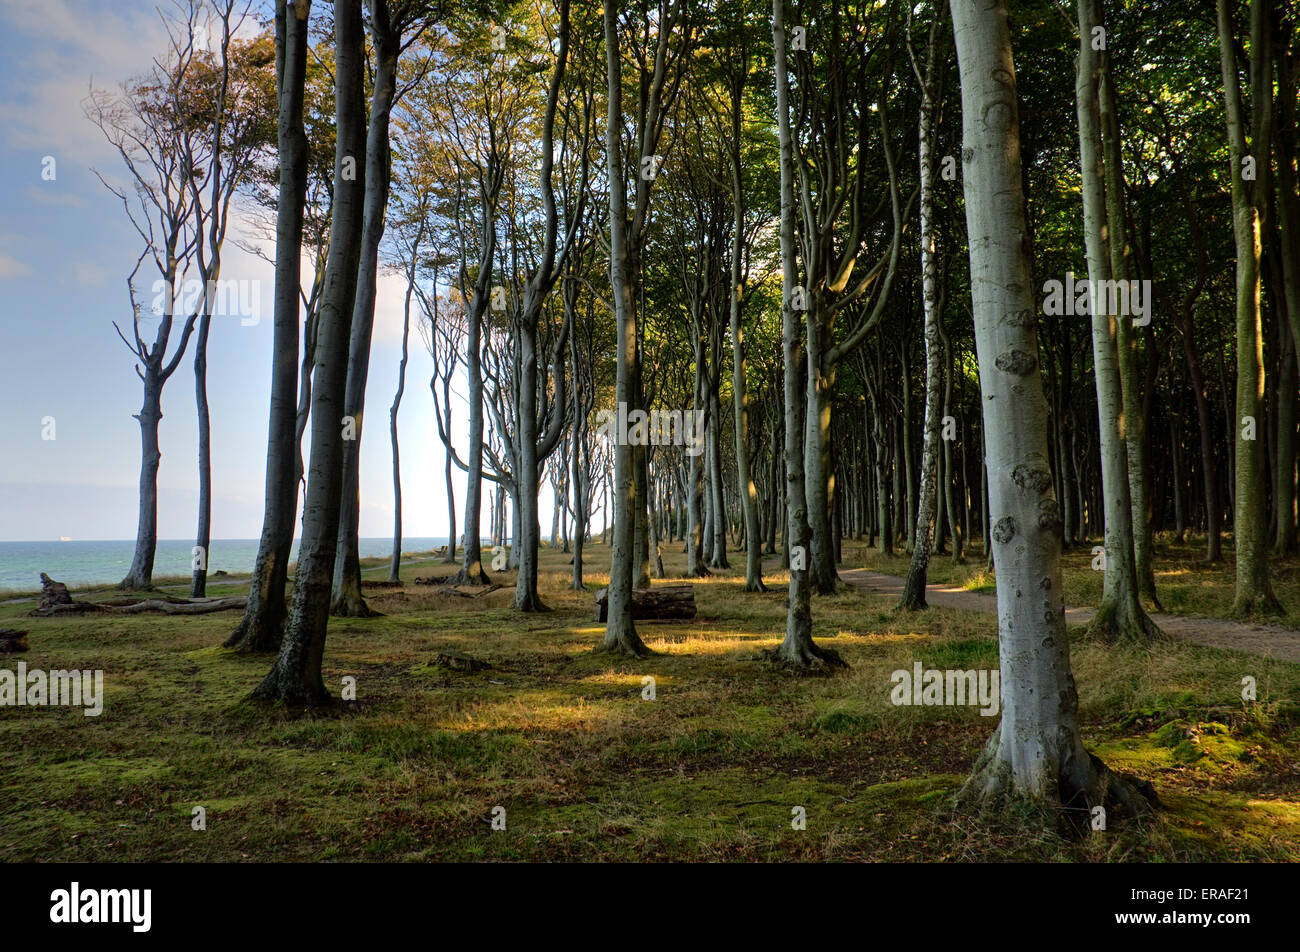 Foresta di faggio, mente legno, legno di ghost, presso il mar baltico a nienhagen, Meclemburgo-Pomerania Occidentale, Germania, Europa Foto Stock